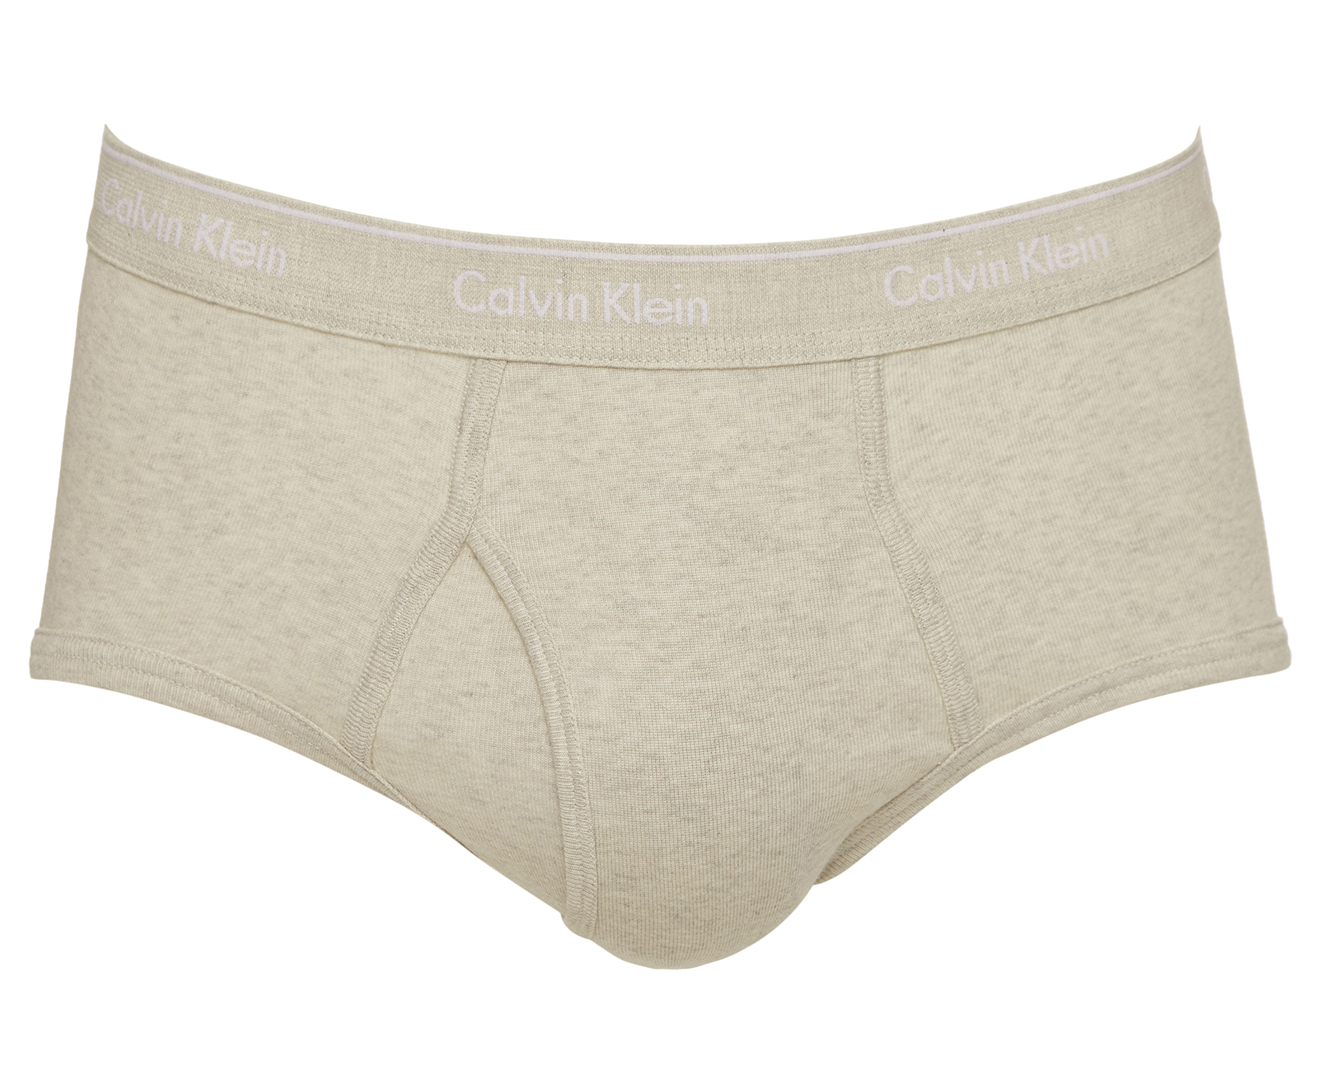 Calvin Klein Men's Underwear 100% Cotton - Free Shipping at Freshpair